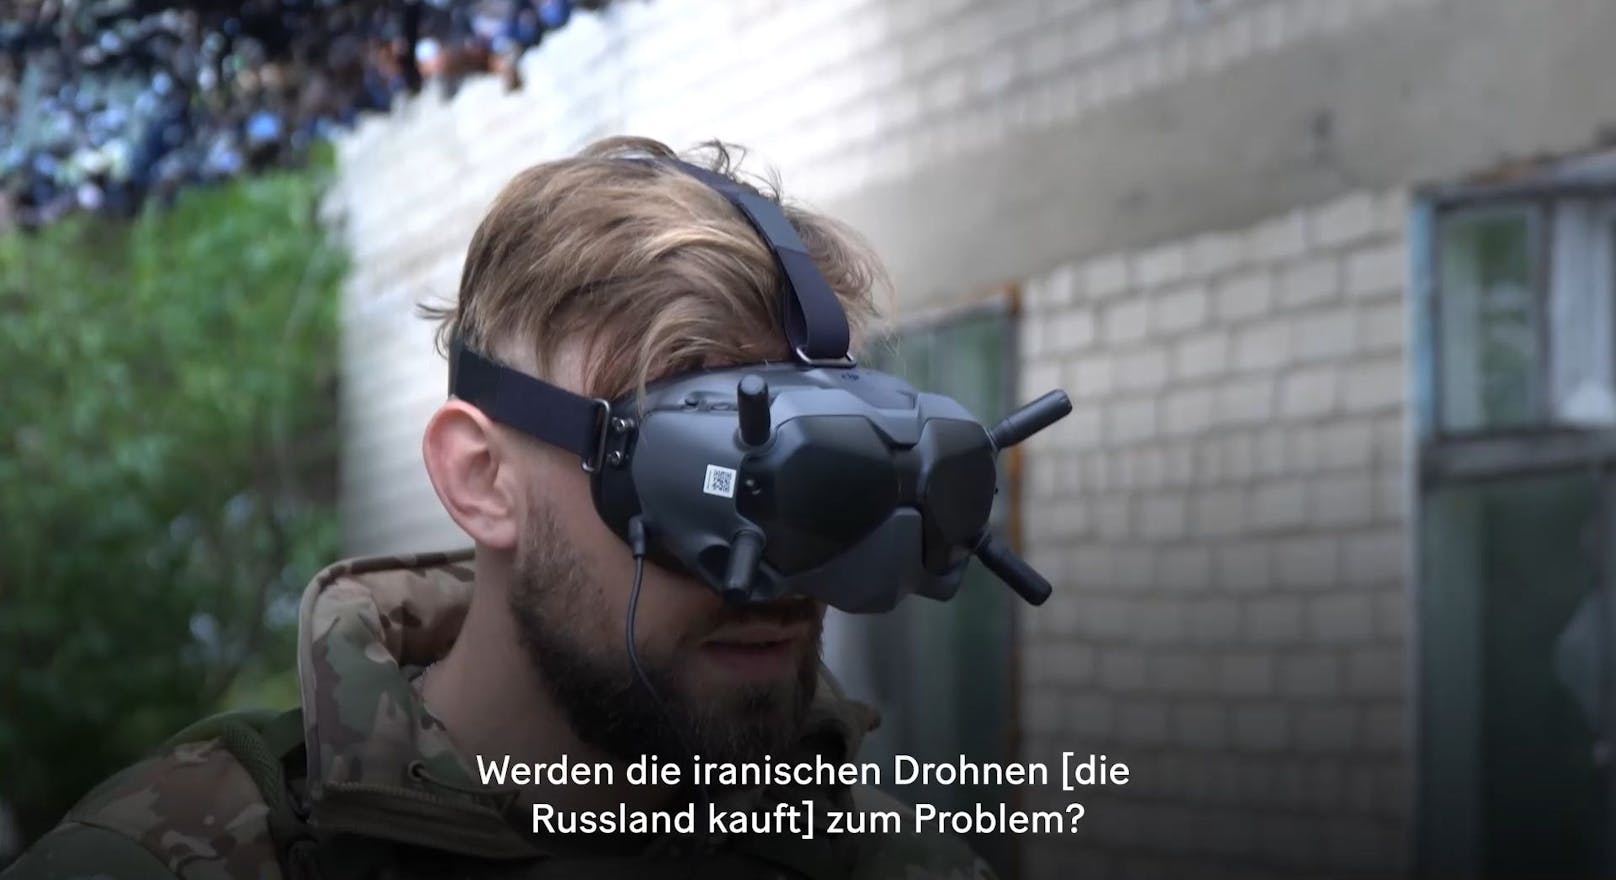 ... mit einer solche VR-Brille. Sie zeigt ihm das Bild, als würde er direkt im Cockpit sitzen.&nbsp;So macht er russische Positionen ausfindig und ...